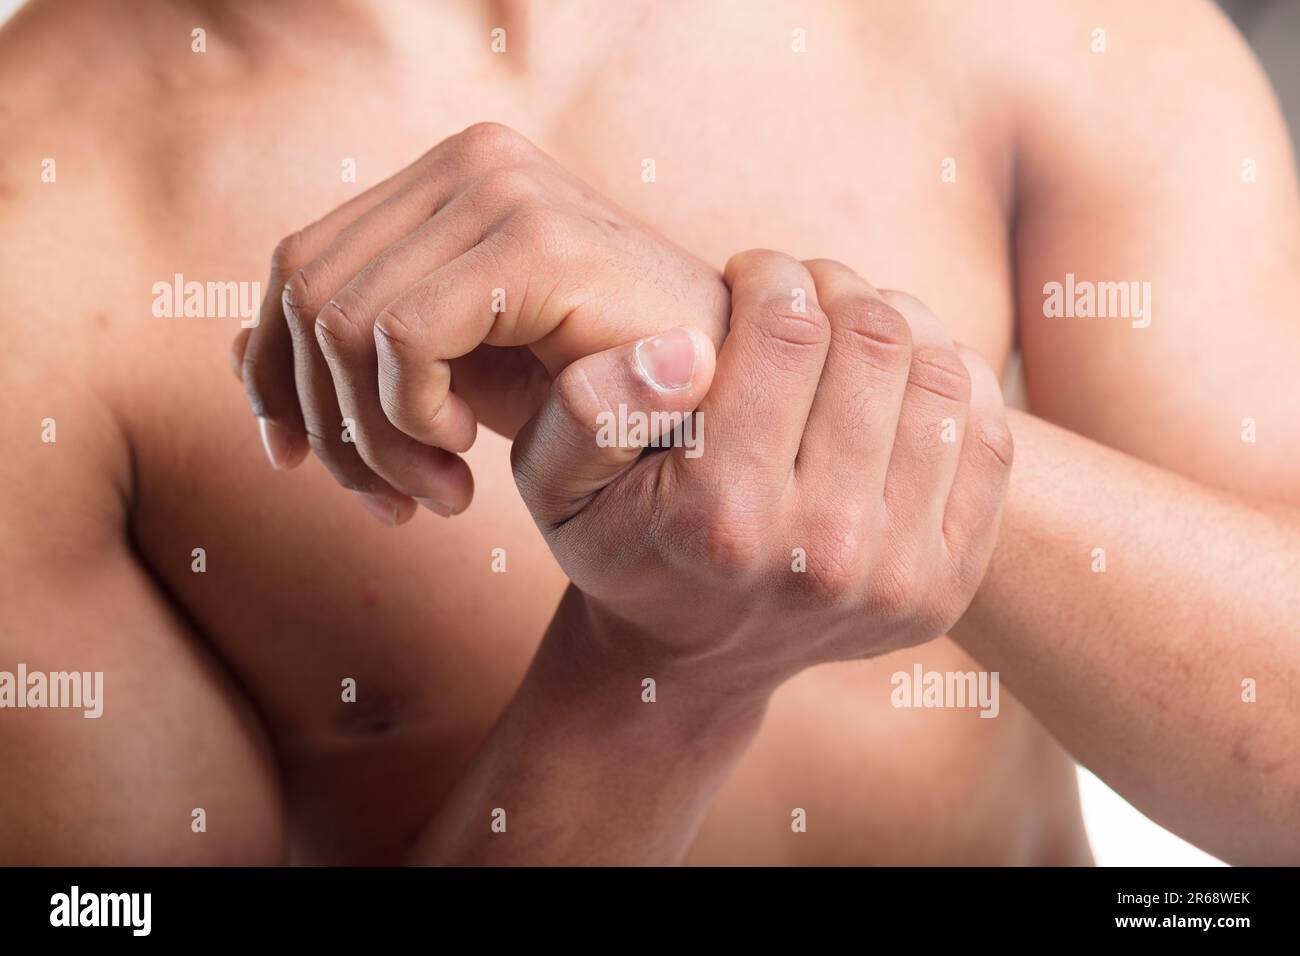 Männerhände im Fokus, eine greift das andere Handgelenk wegen Schmerzen, möglicherweise Tendinitis oder Karpaltunnelsyndrom Stockfoto